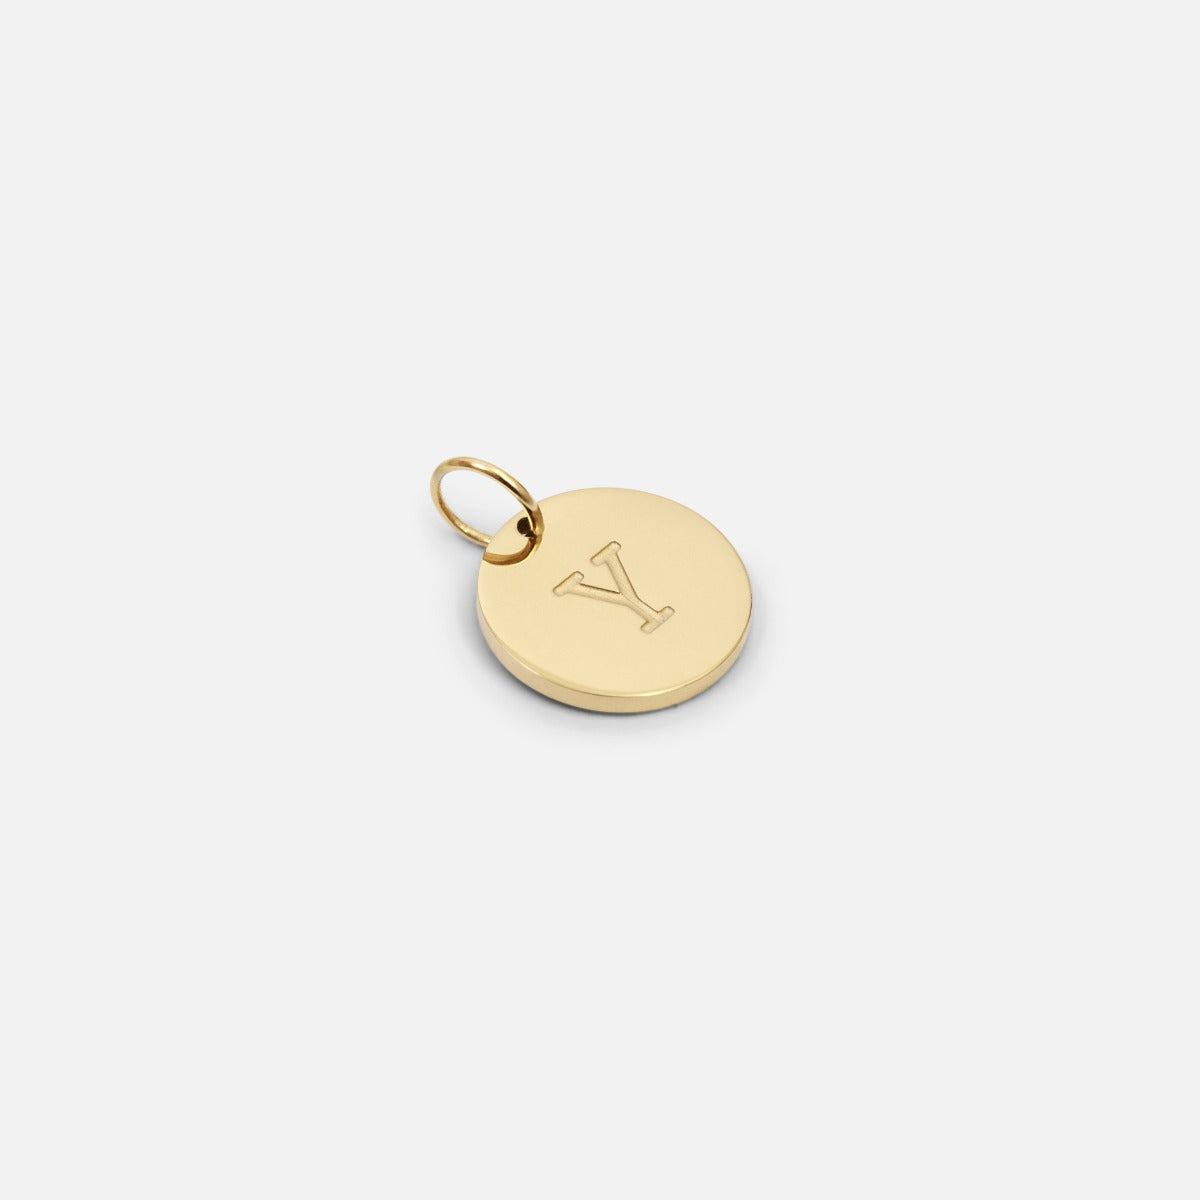 Petite breloque dorée symbolique gravée lettre de l’alphabet "y"